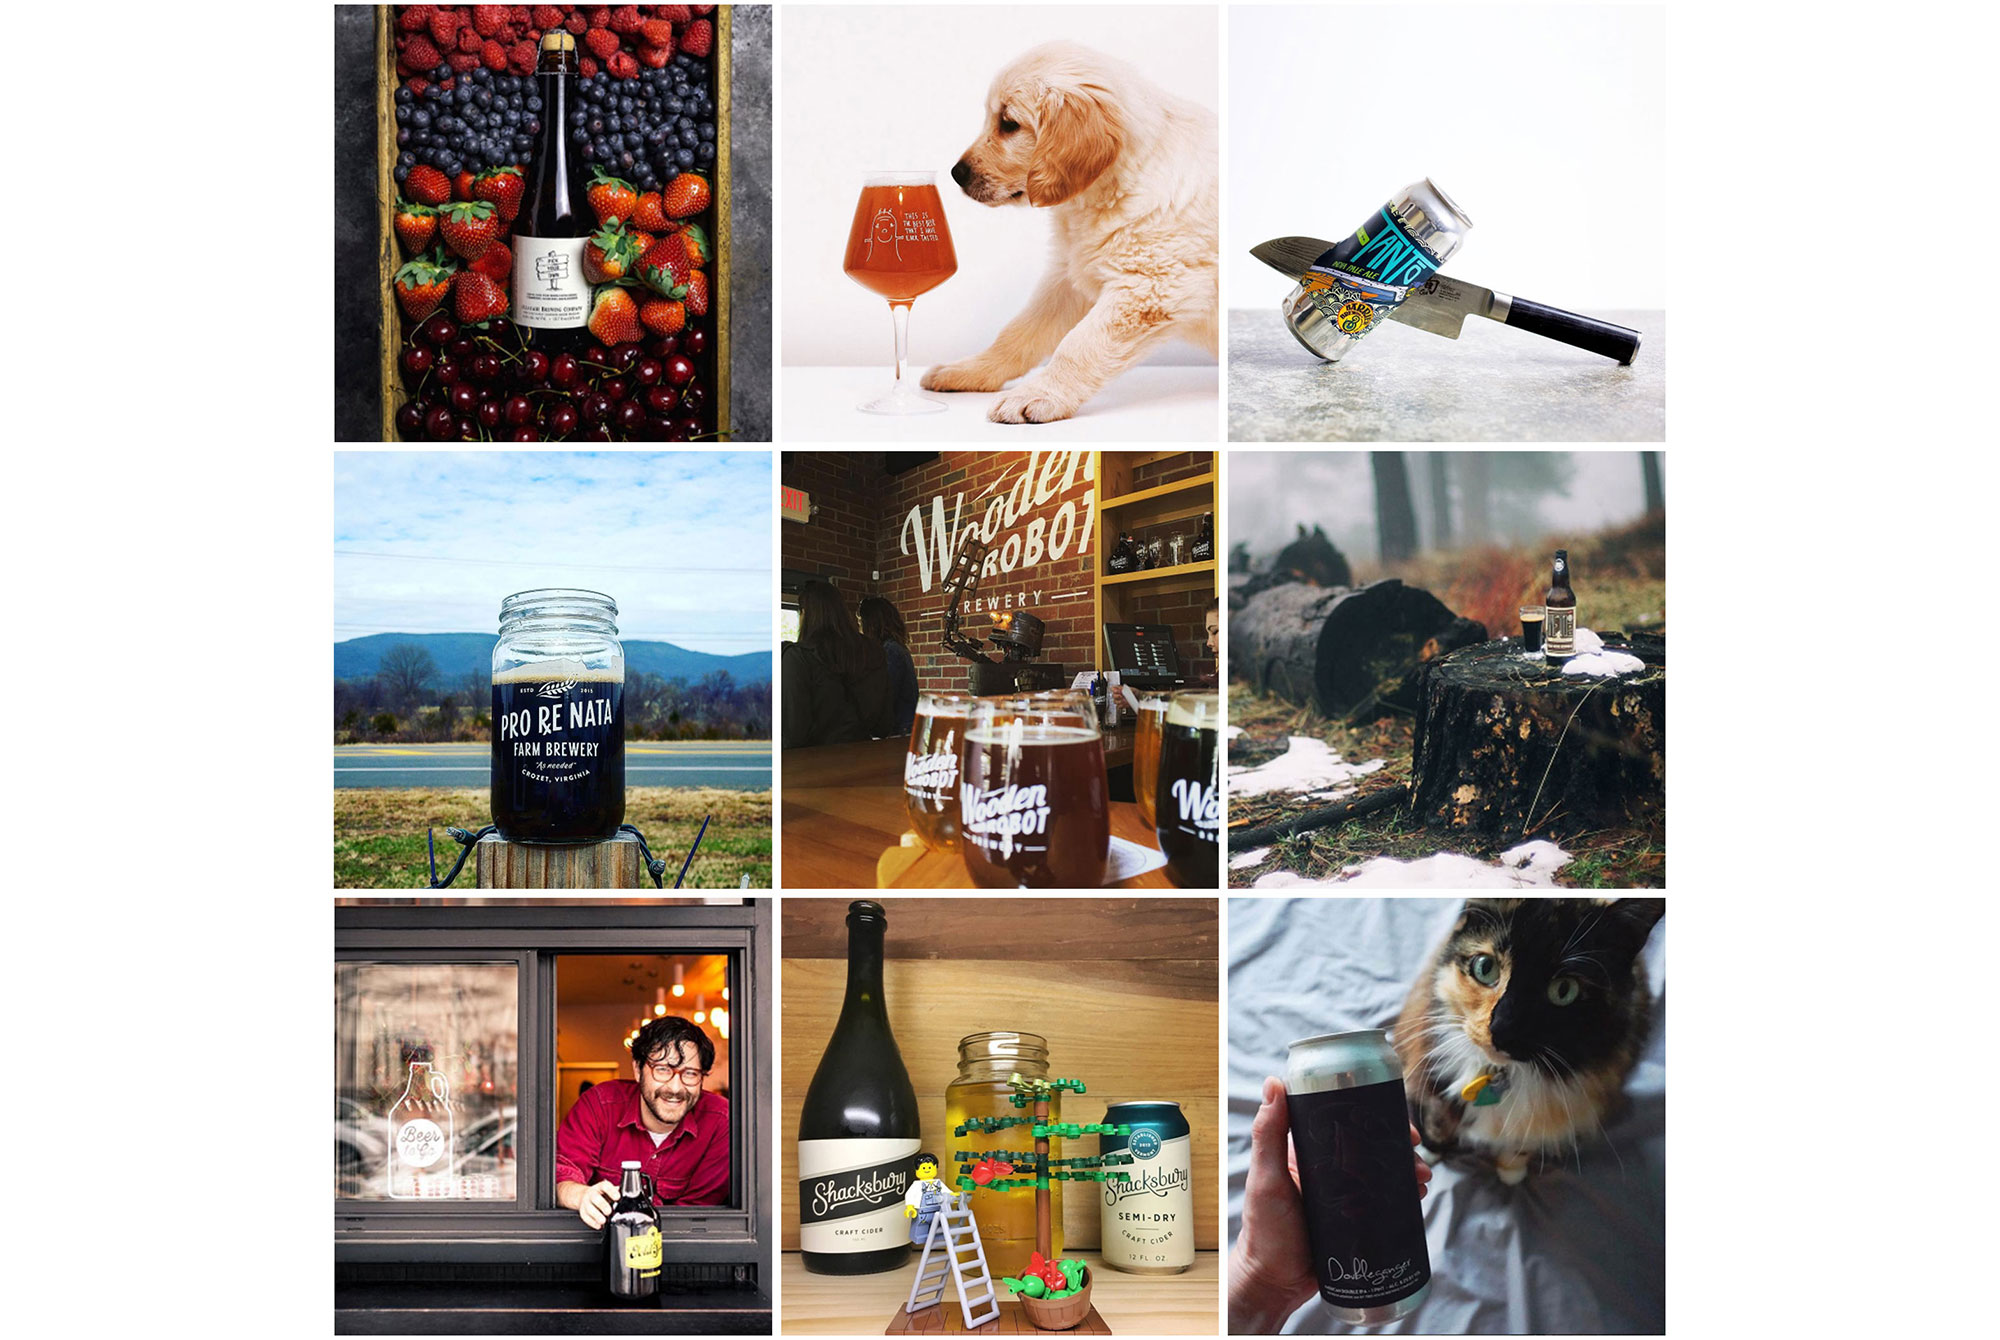 The 10 Best Beer Instagram Accounts